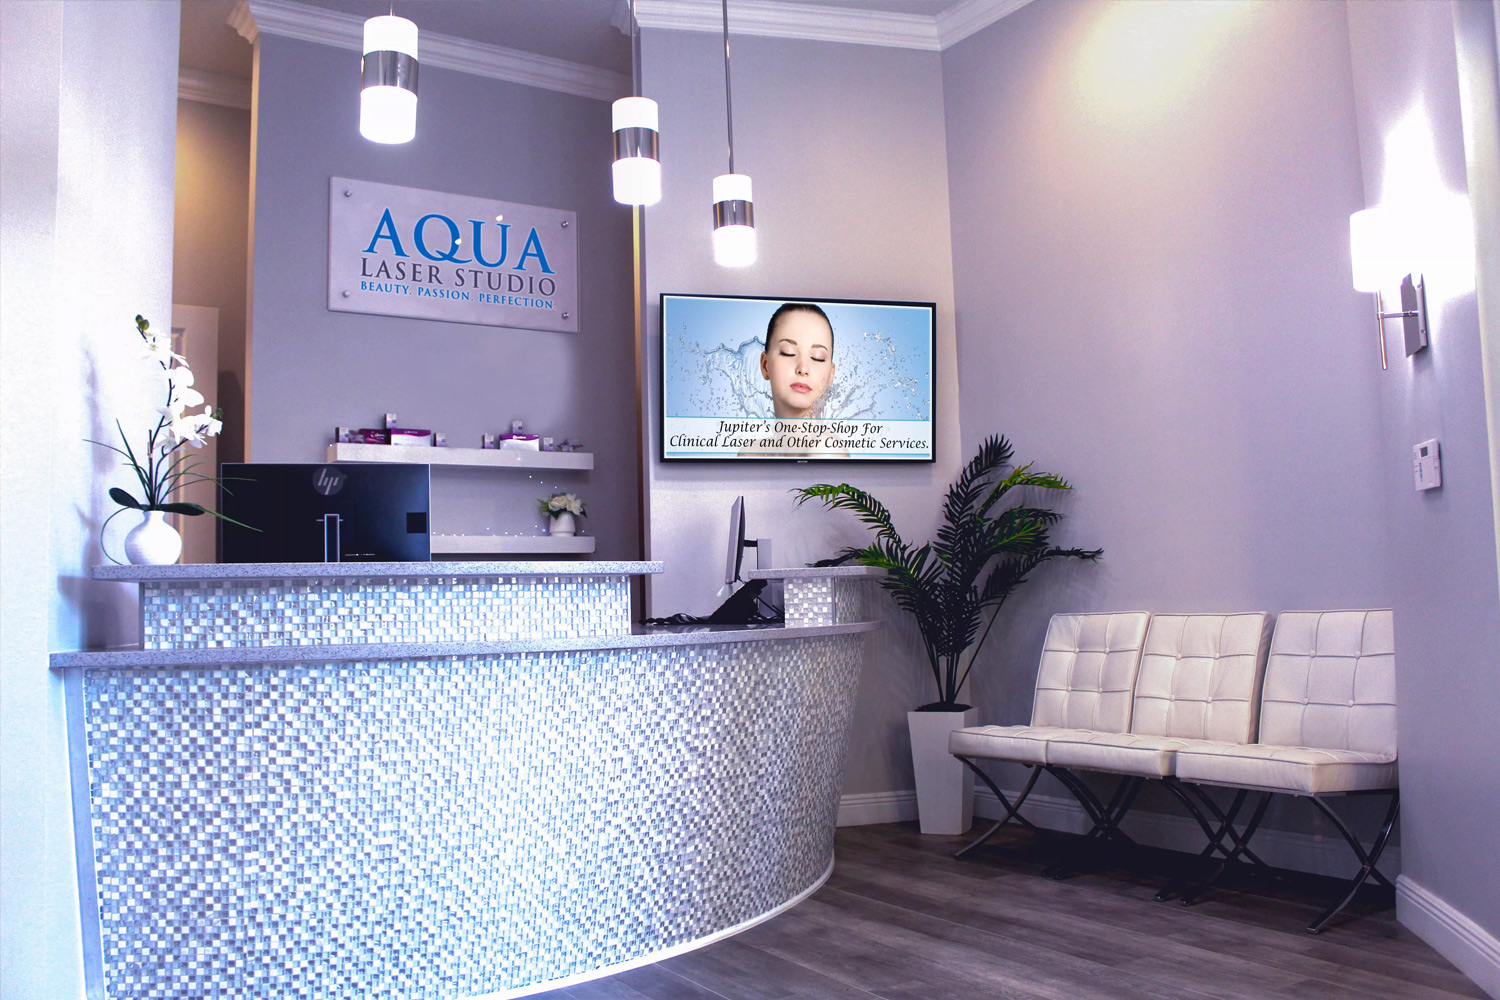 Inside photo of Aqua Laser Studio located in Jupiter, Florida